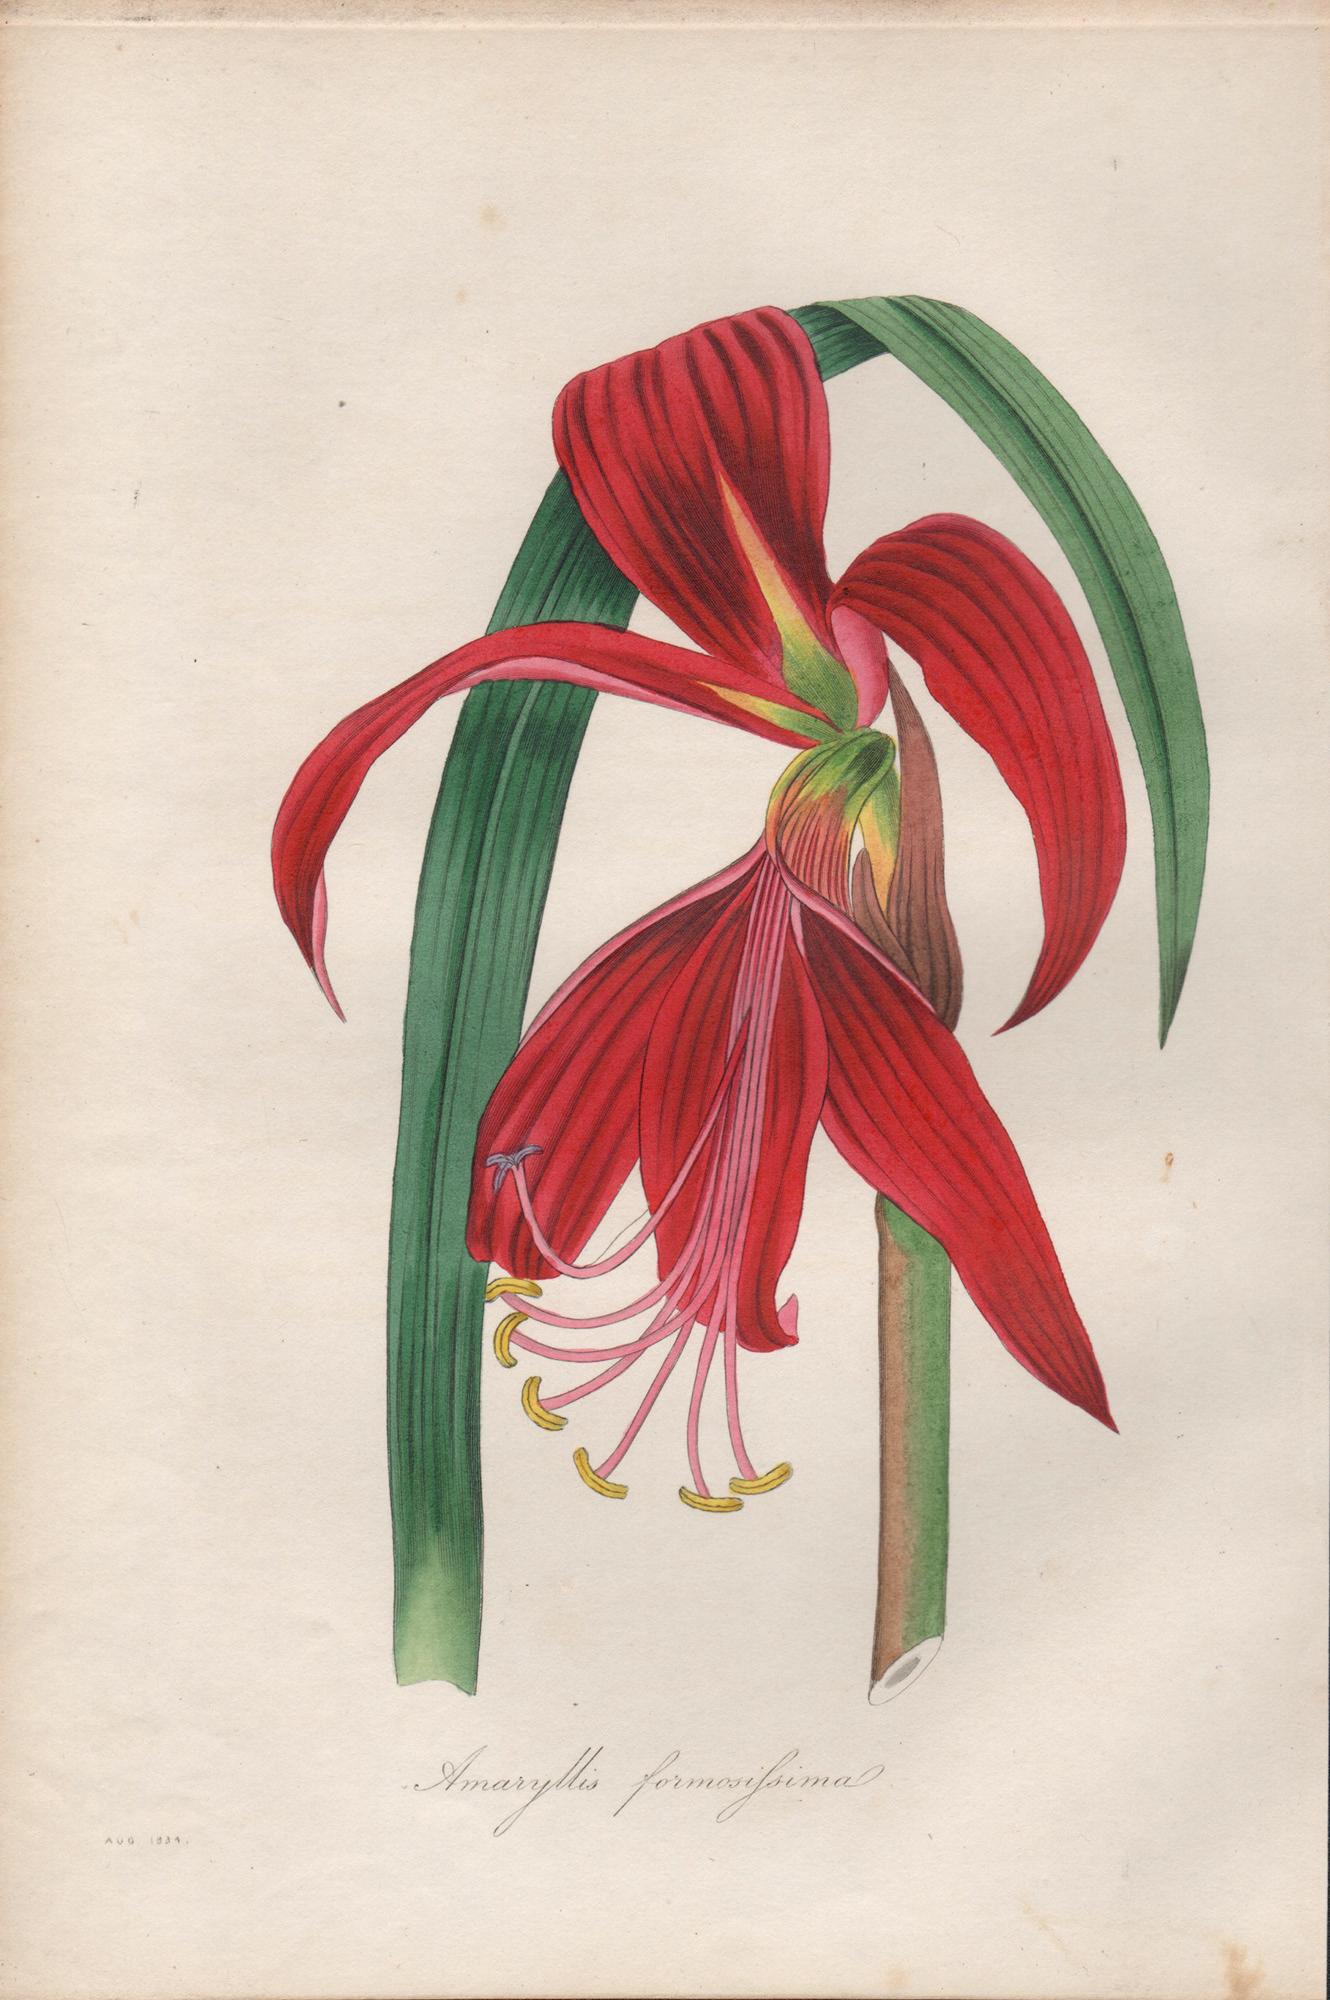 Frederick William Smith Print - Amaryllis formosissima (Sprekelia, Aztec Lily), antique botanical engraving